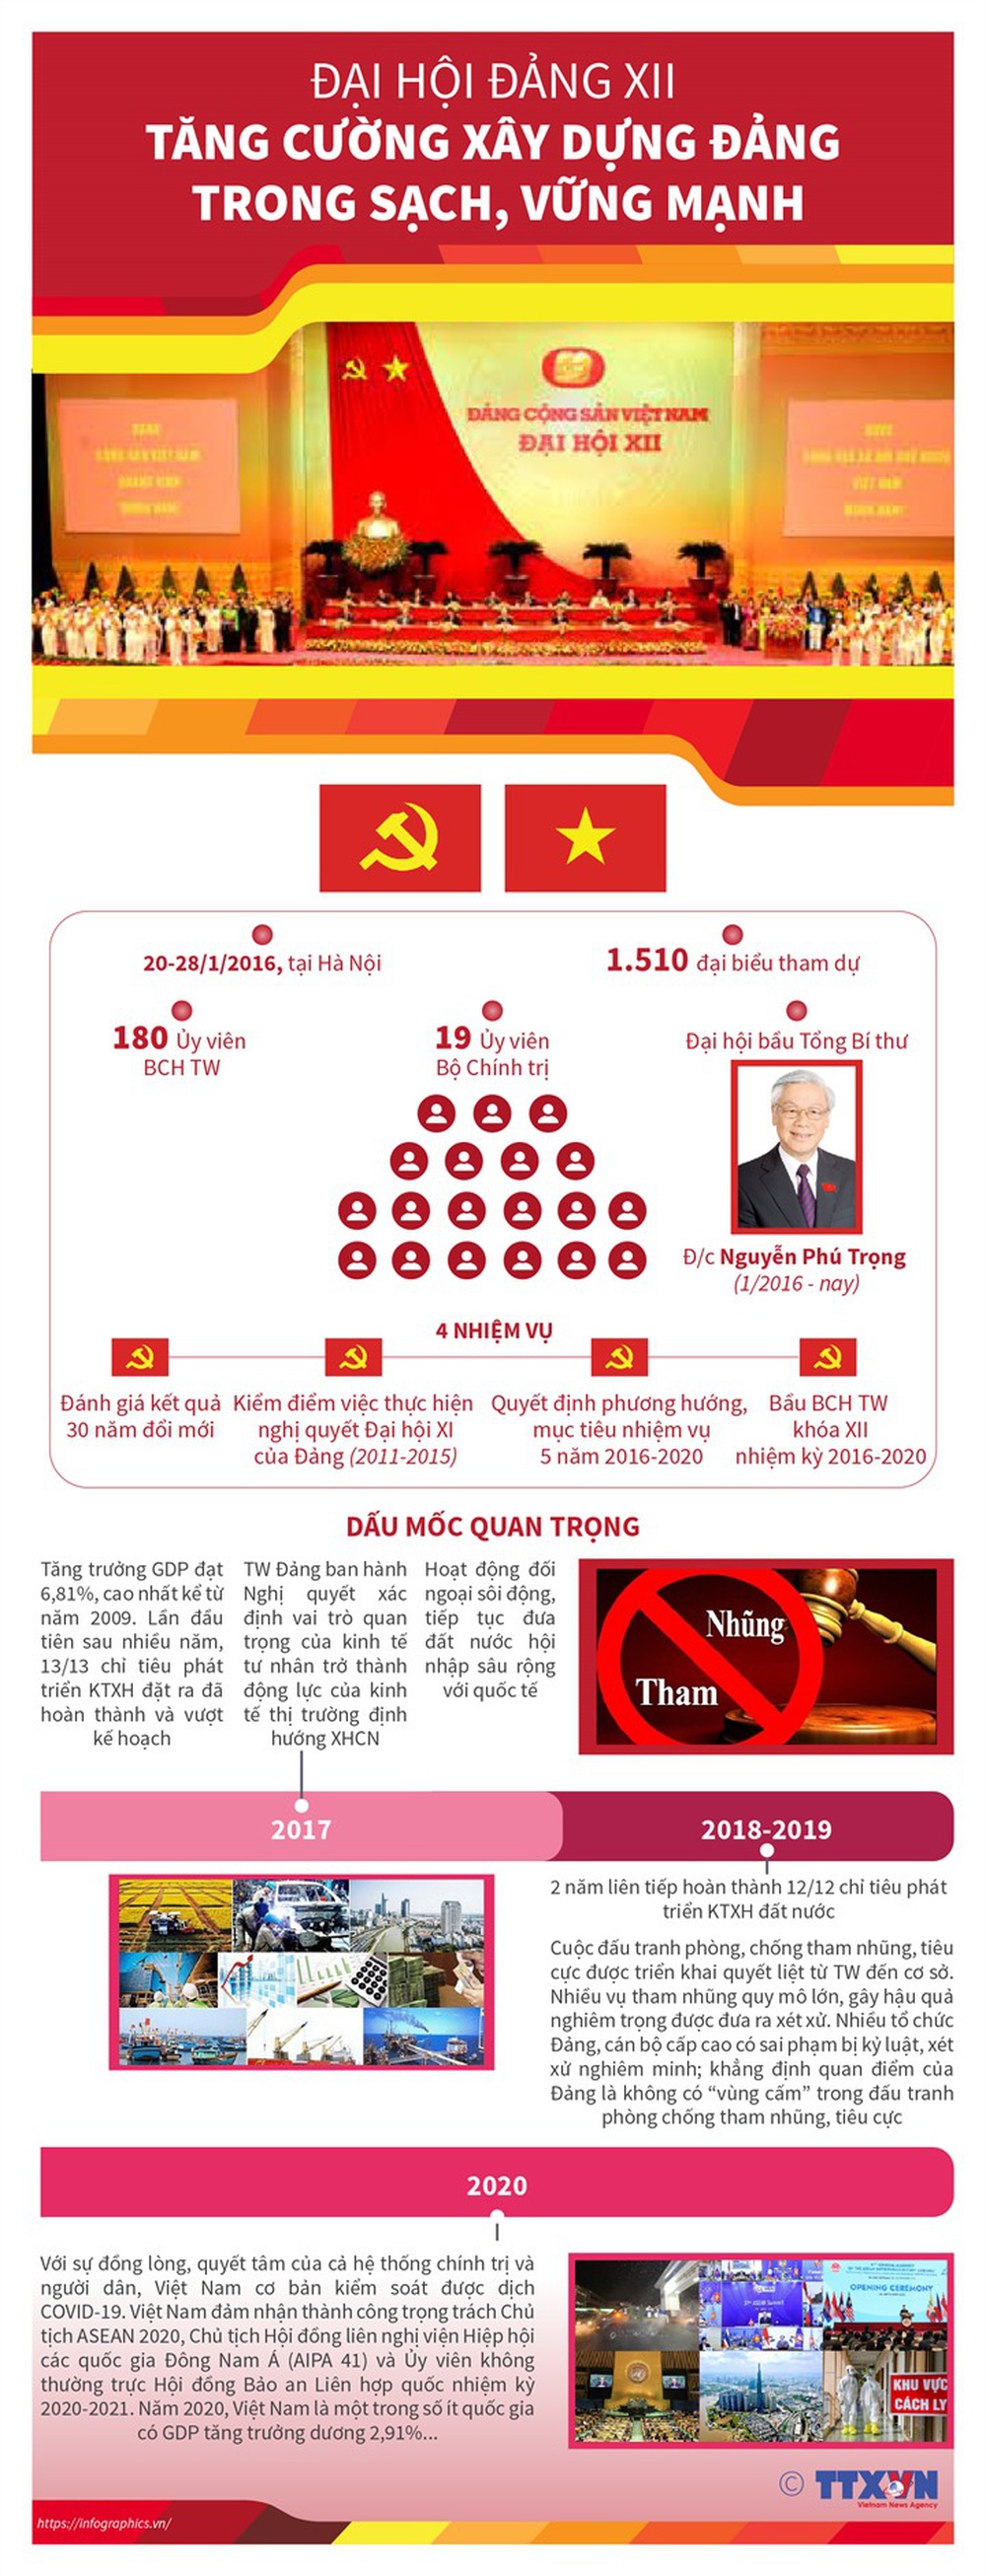 Nhìn lại 12 kỳ Đại hội của Đảng Cộng sản Việt Nam - Ảnh 12.